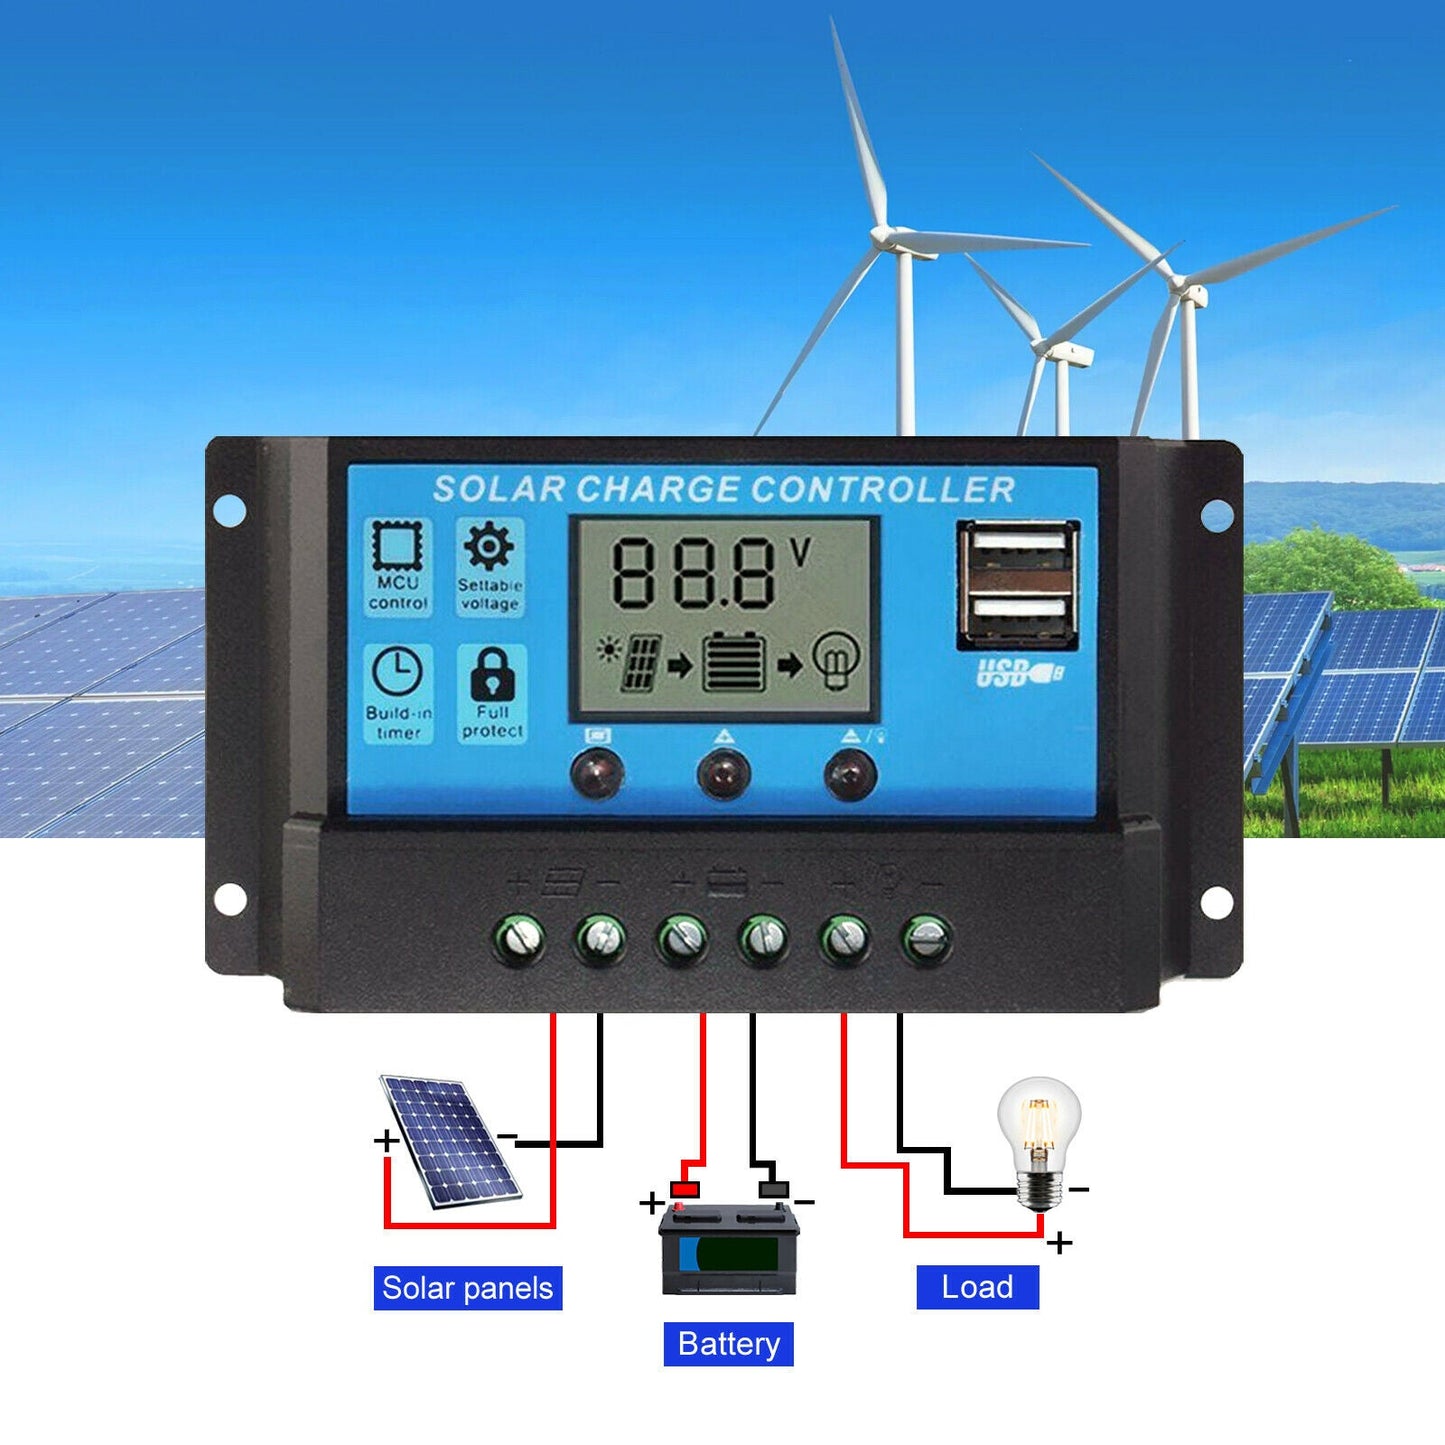 Solar Panel Regulator Charge Controller - 10/20/30A / Amp 12V/24V